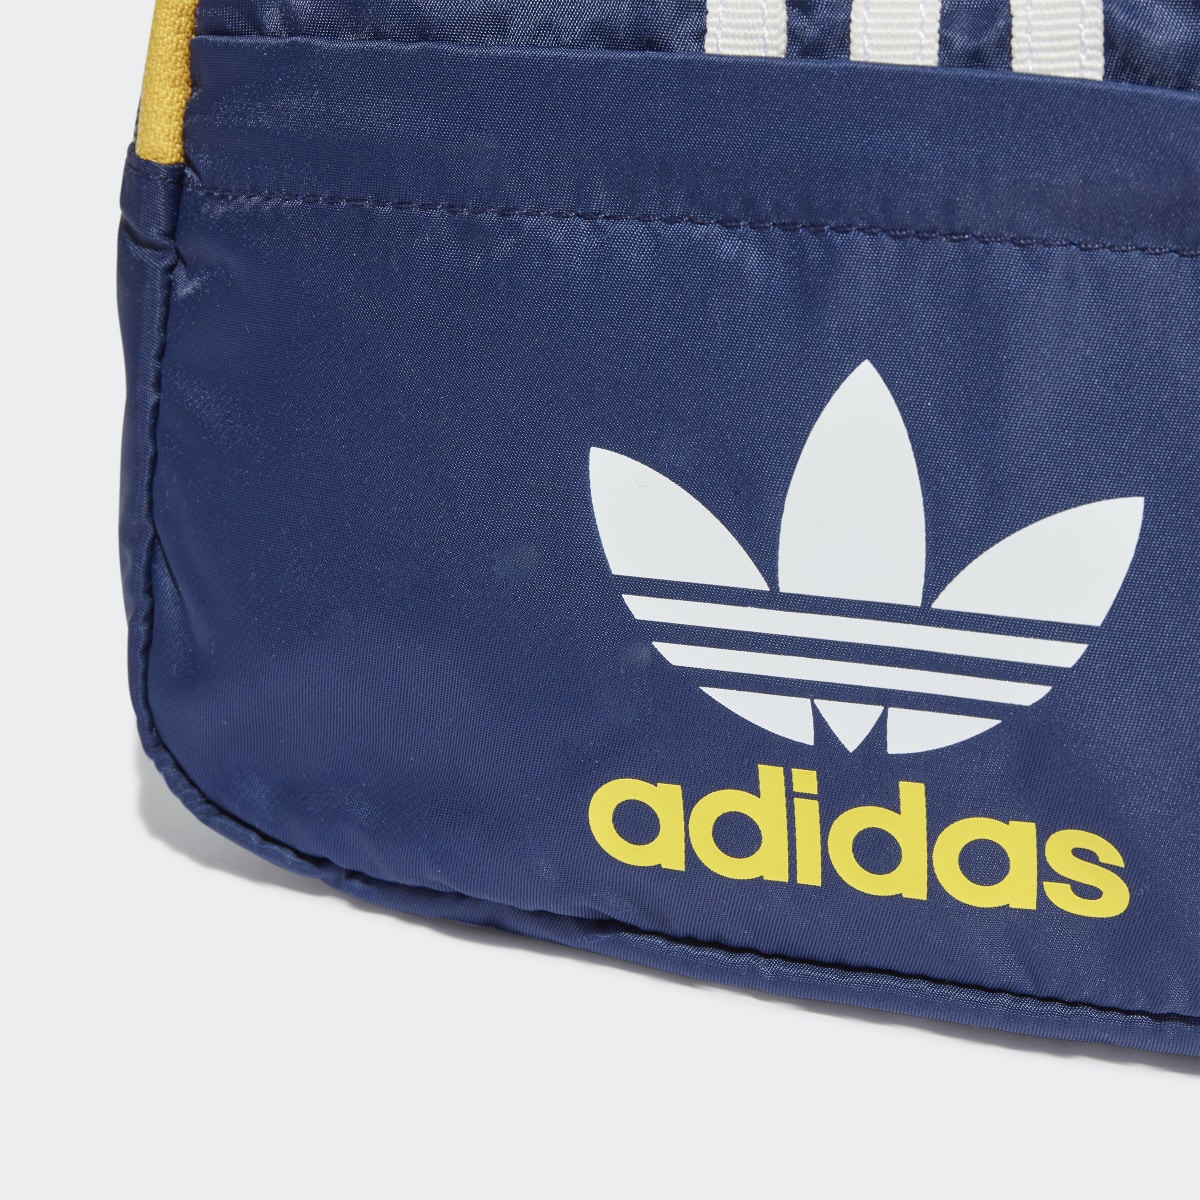 Adidas Adicolor Archive Waist Bag. 6